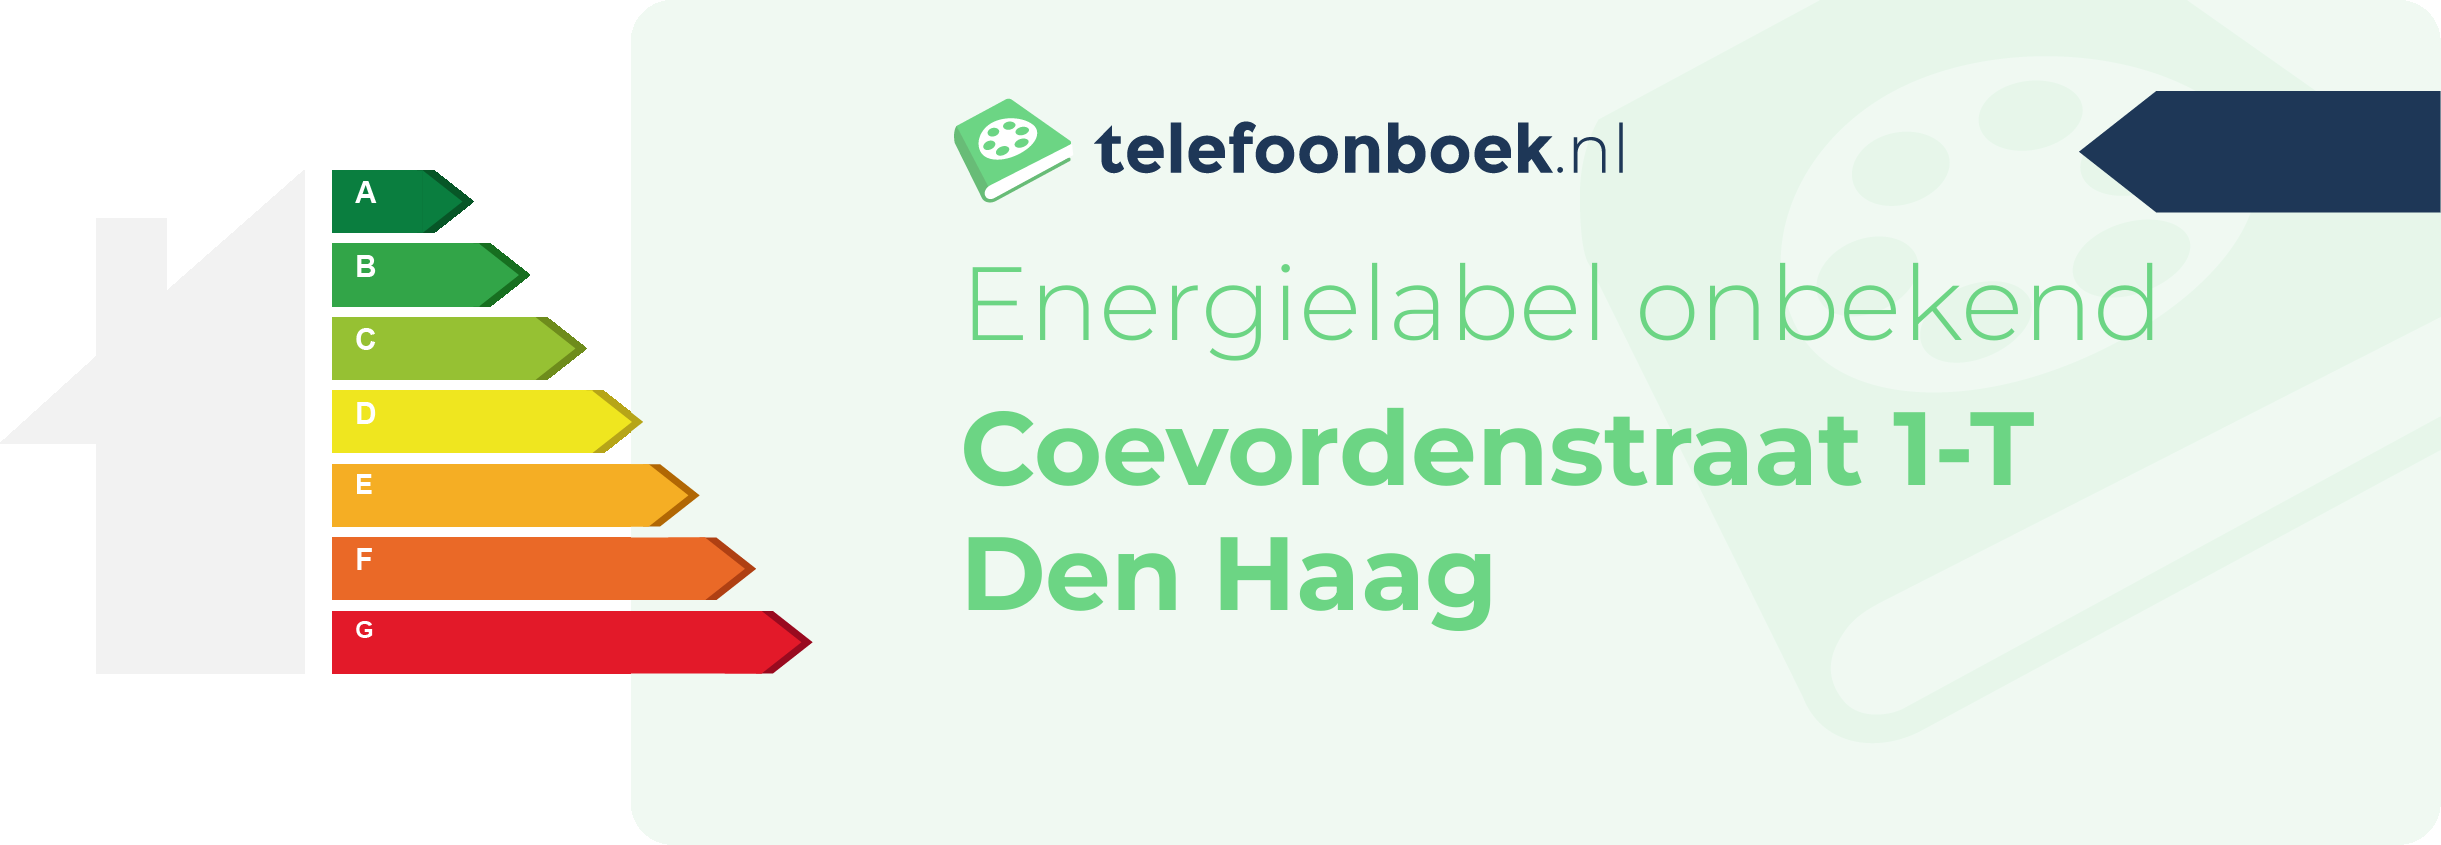 Energielabel Coevordenstraat 1-T Den Haag